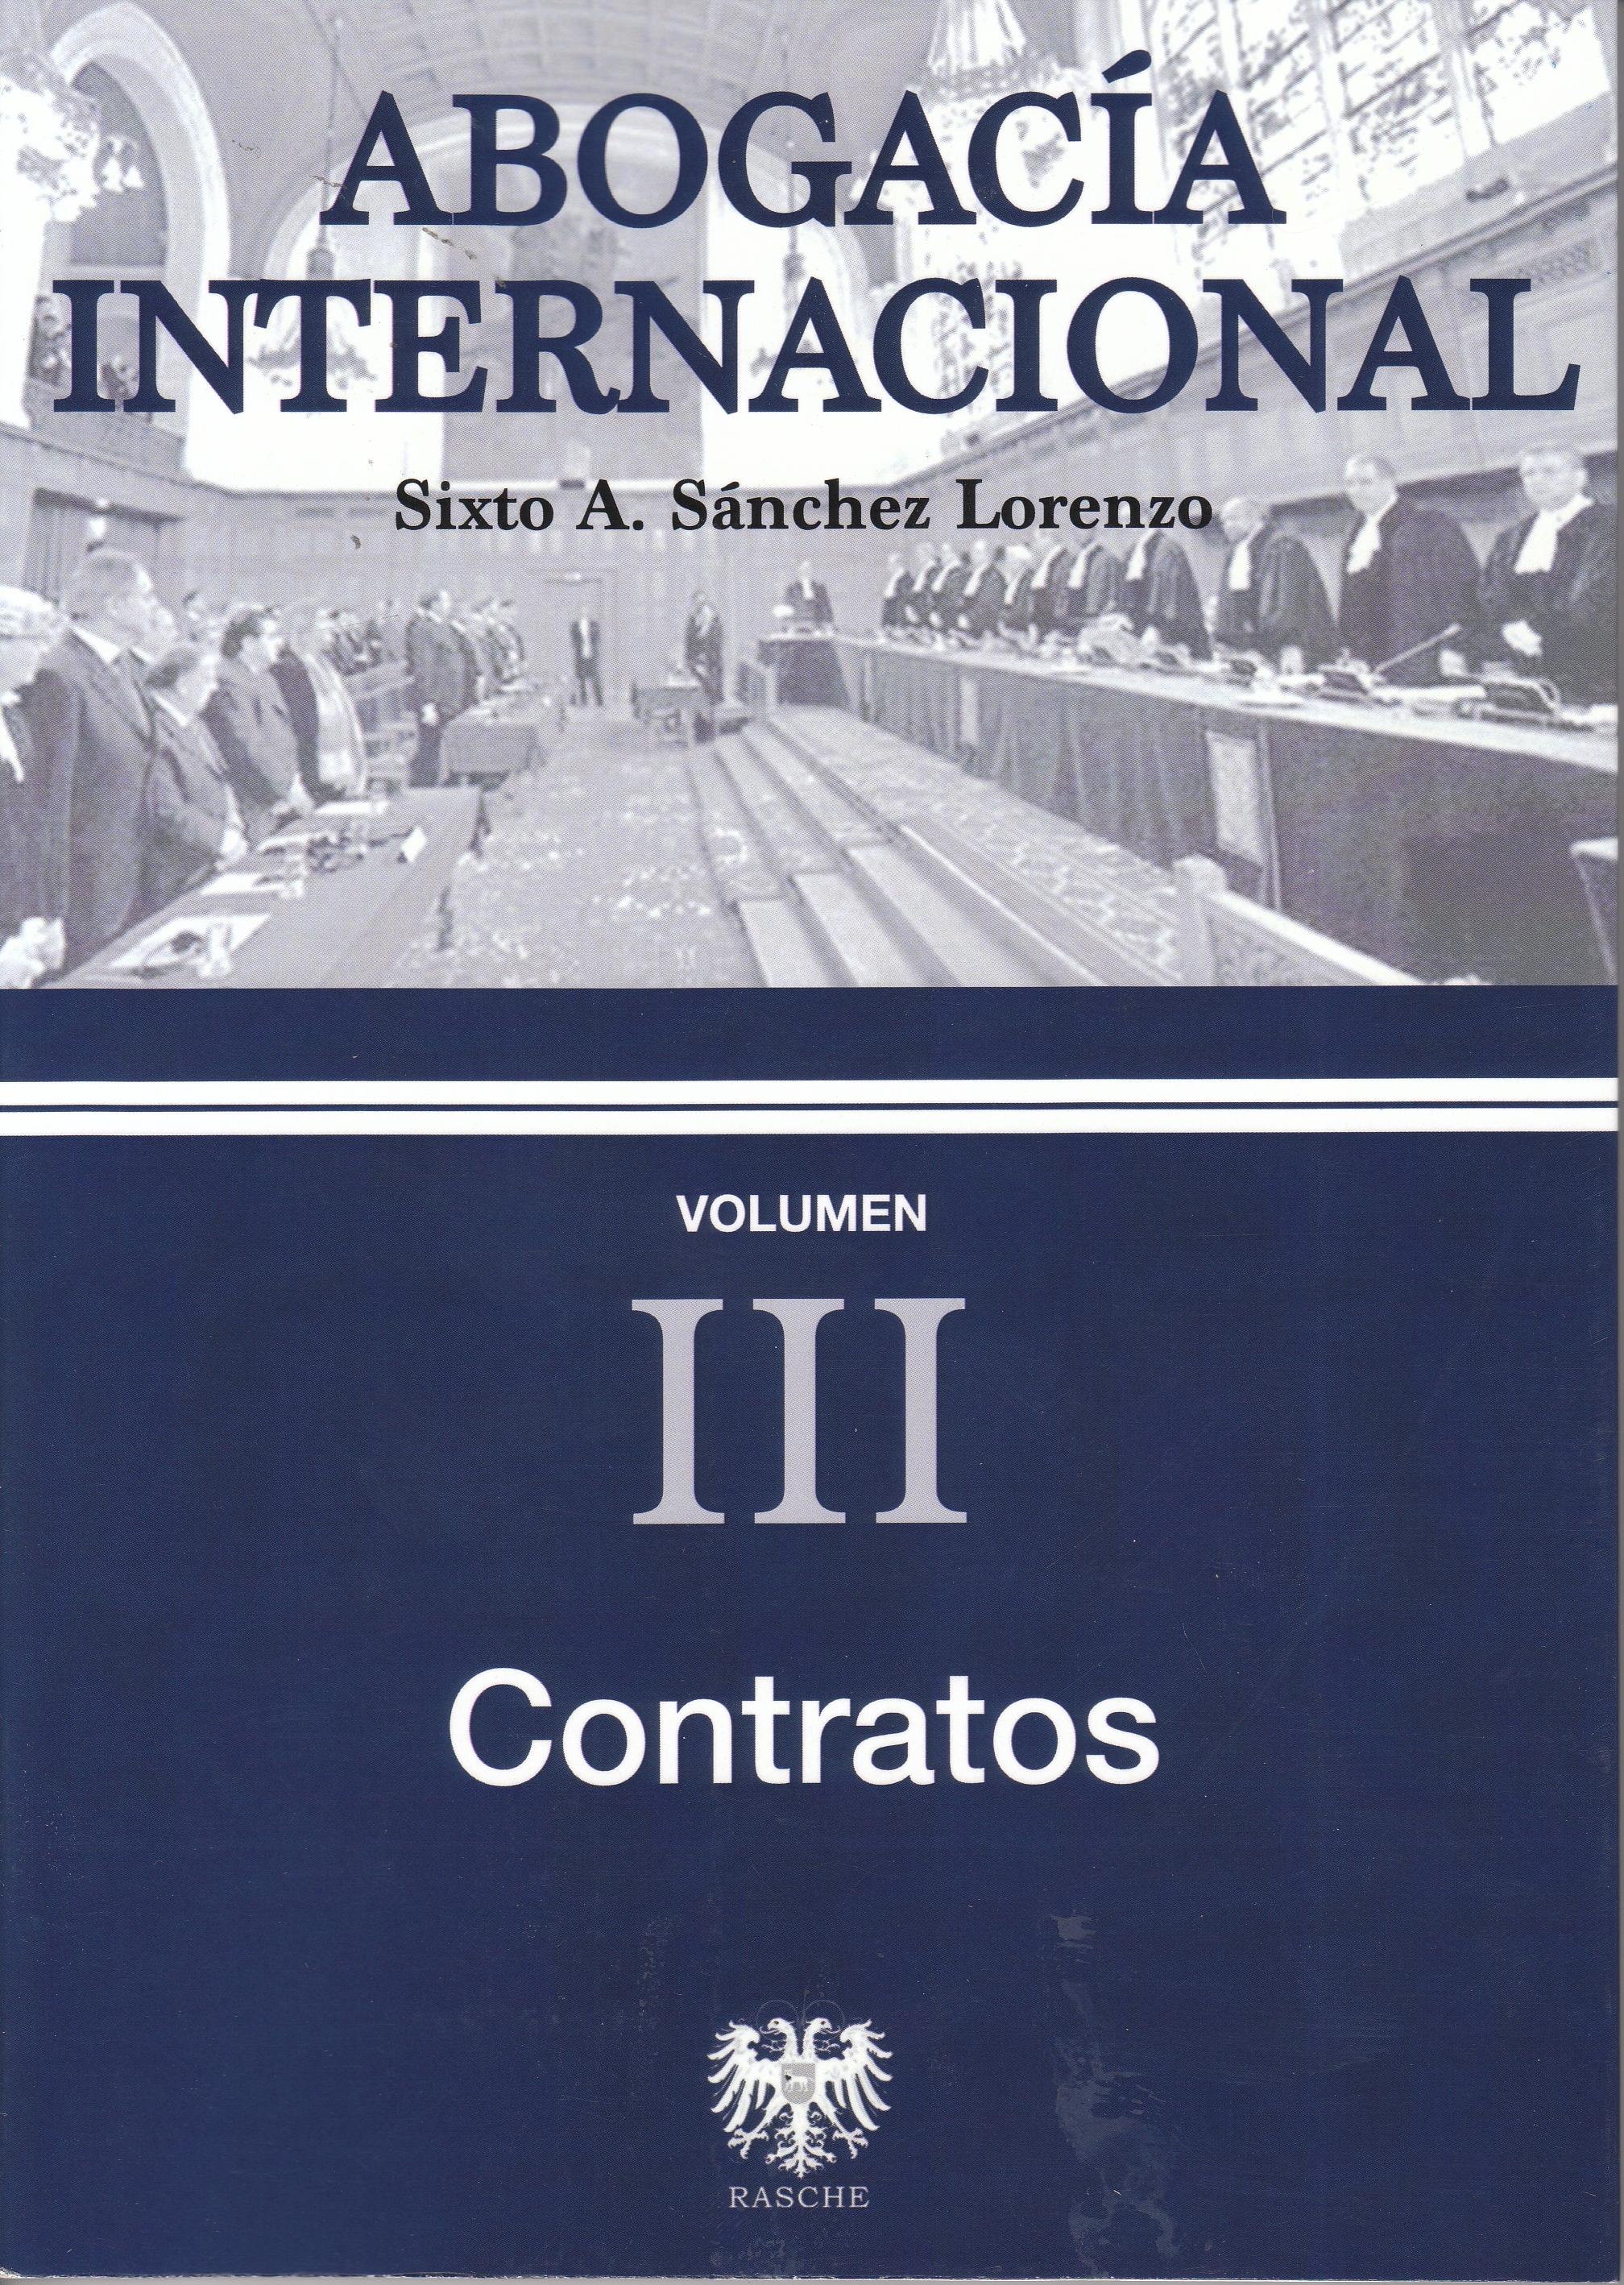 Abogacía internacional Vol.III "Contratos"